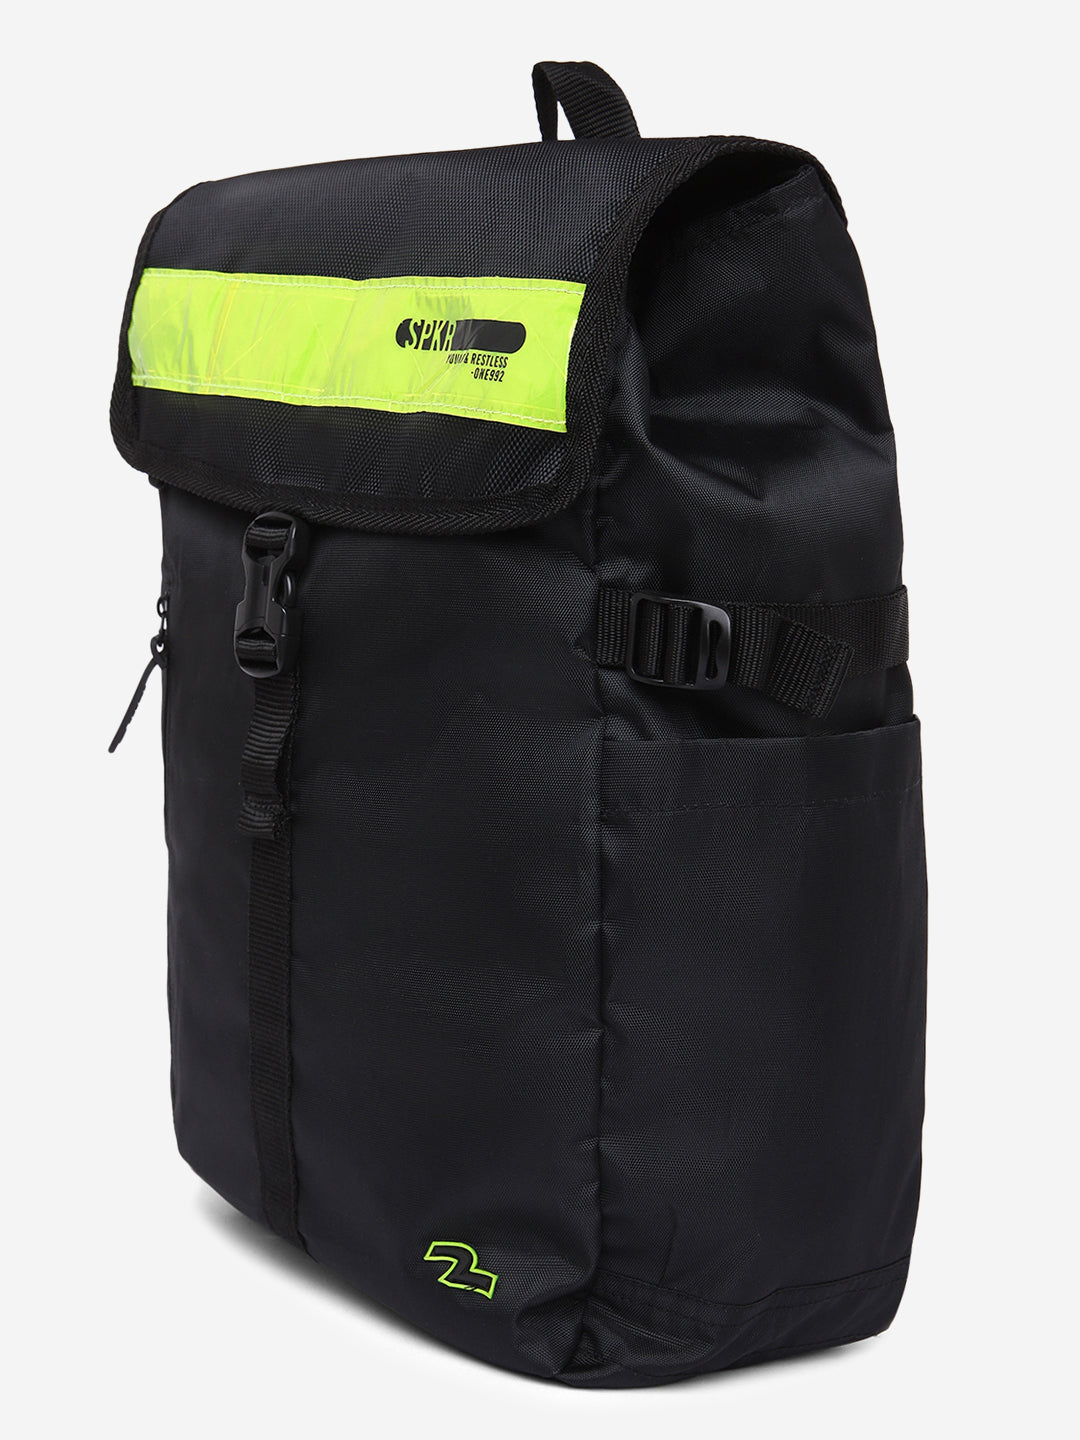 Spykar Black Neon Traveler Backpack